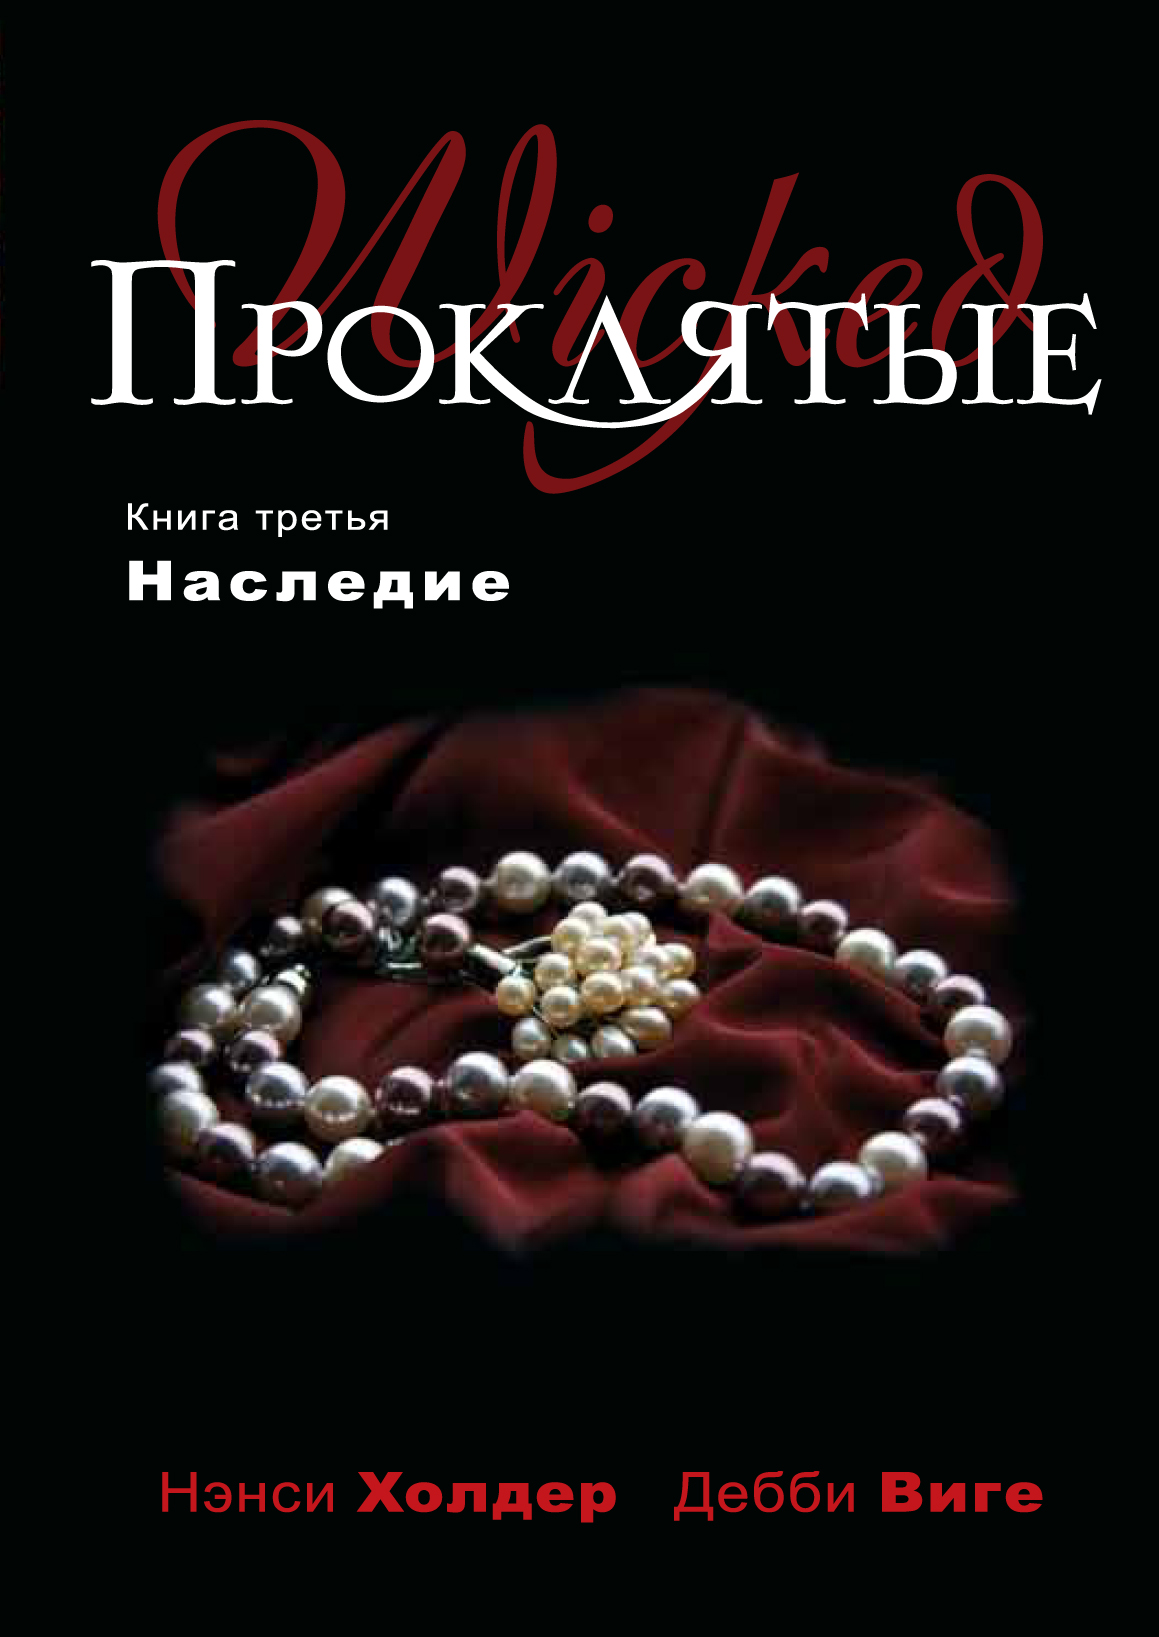 https://cdn.eksmo.ru/v2/ITD000000000088674/COVER/cover3d1.jpg